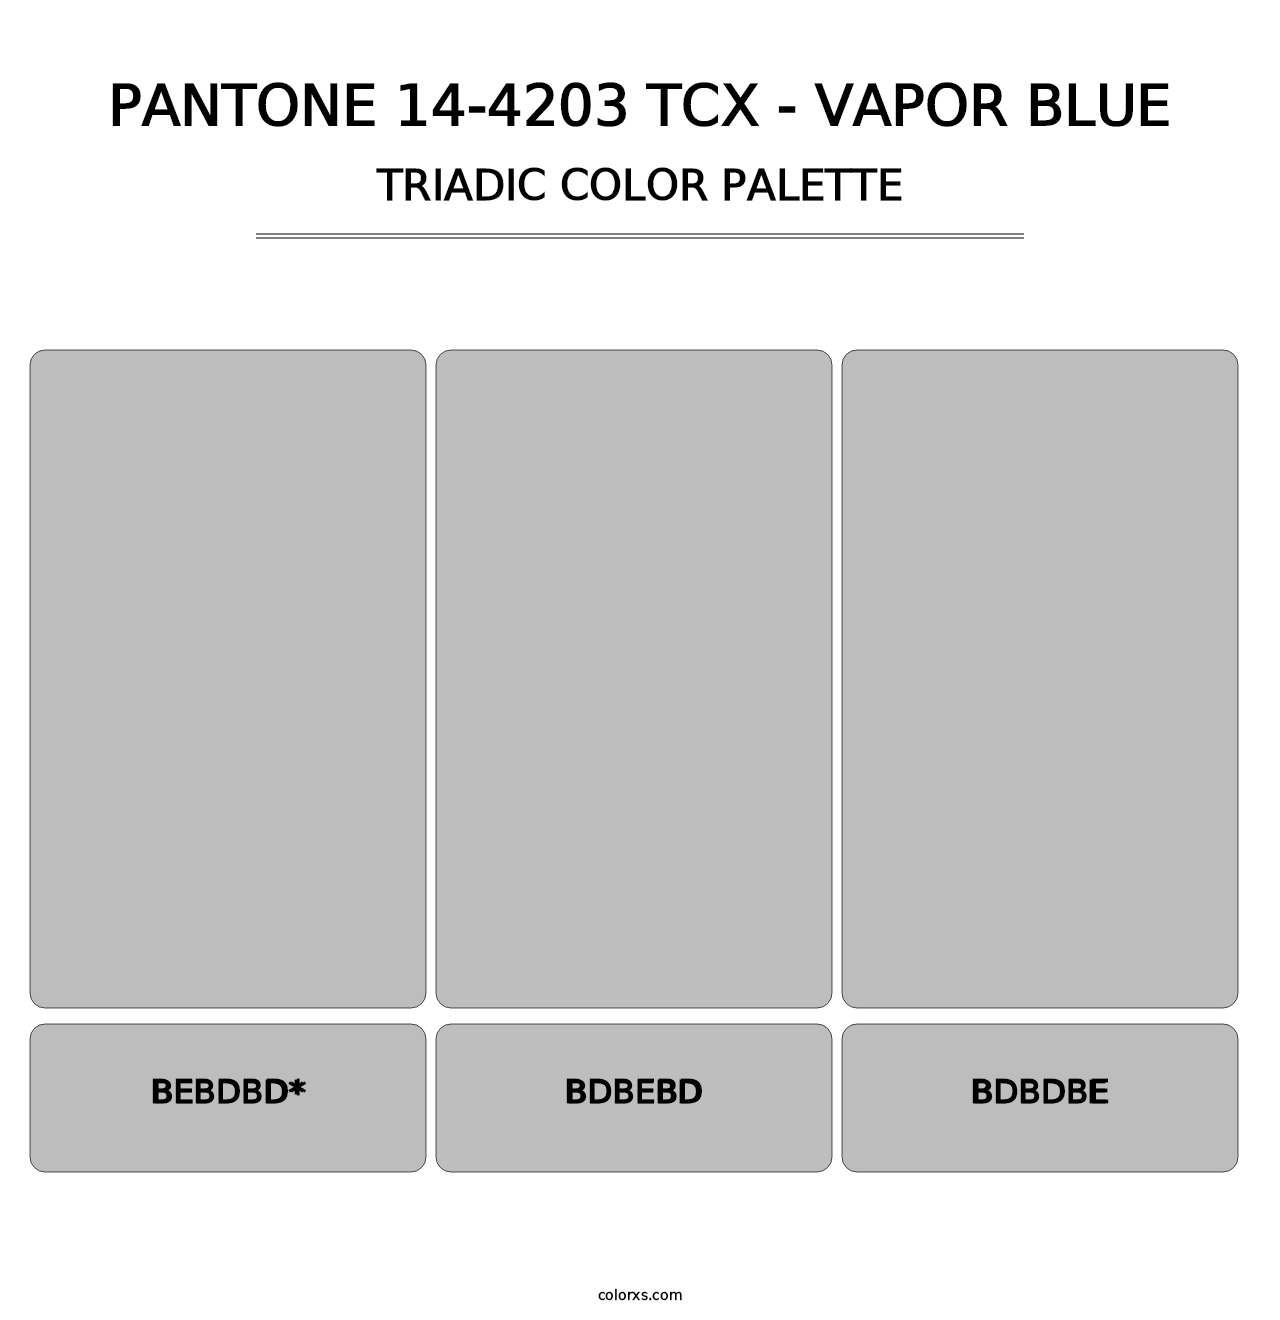 PANTONE 14-4203 TCX - Vapor Blue - Triadic Color Palette